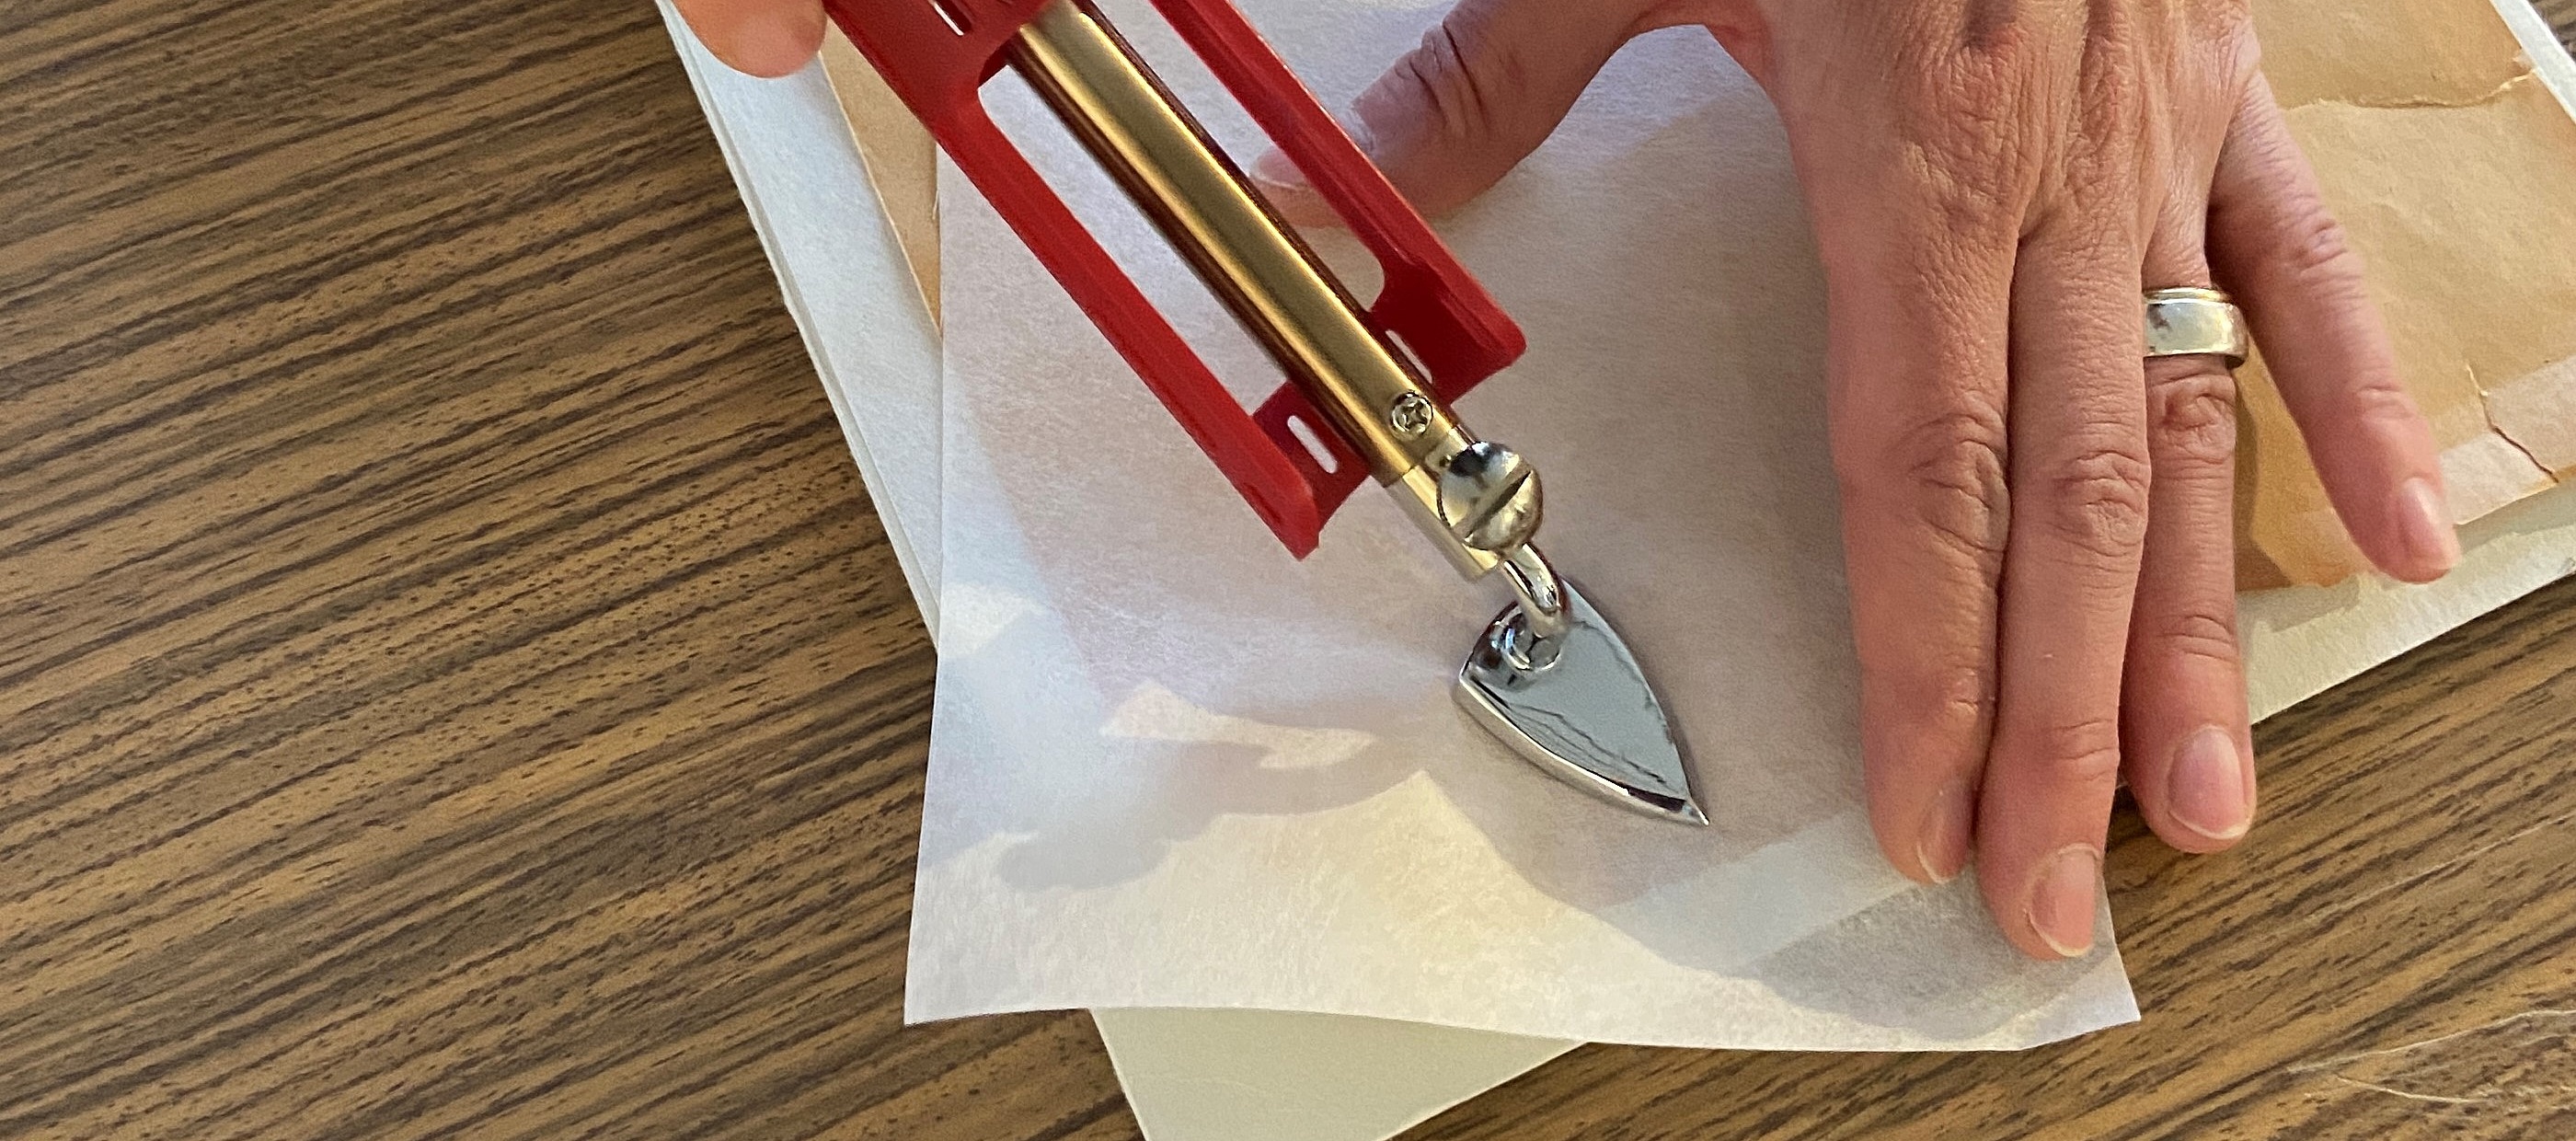 Sichern kleinerer Papierrisse mit Seidenpapier und Mini-Bügeleisen